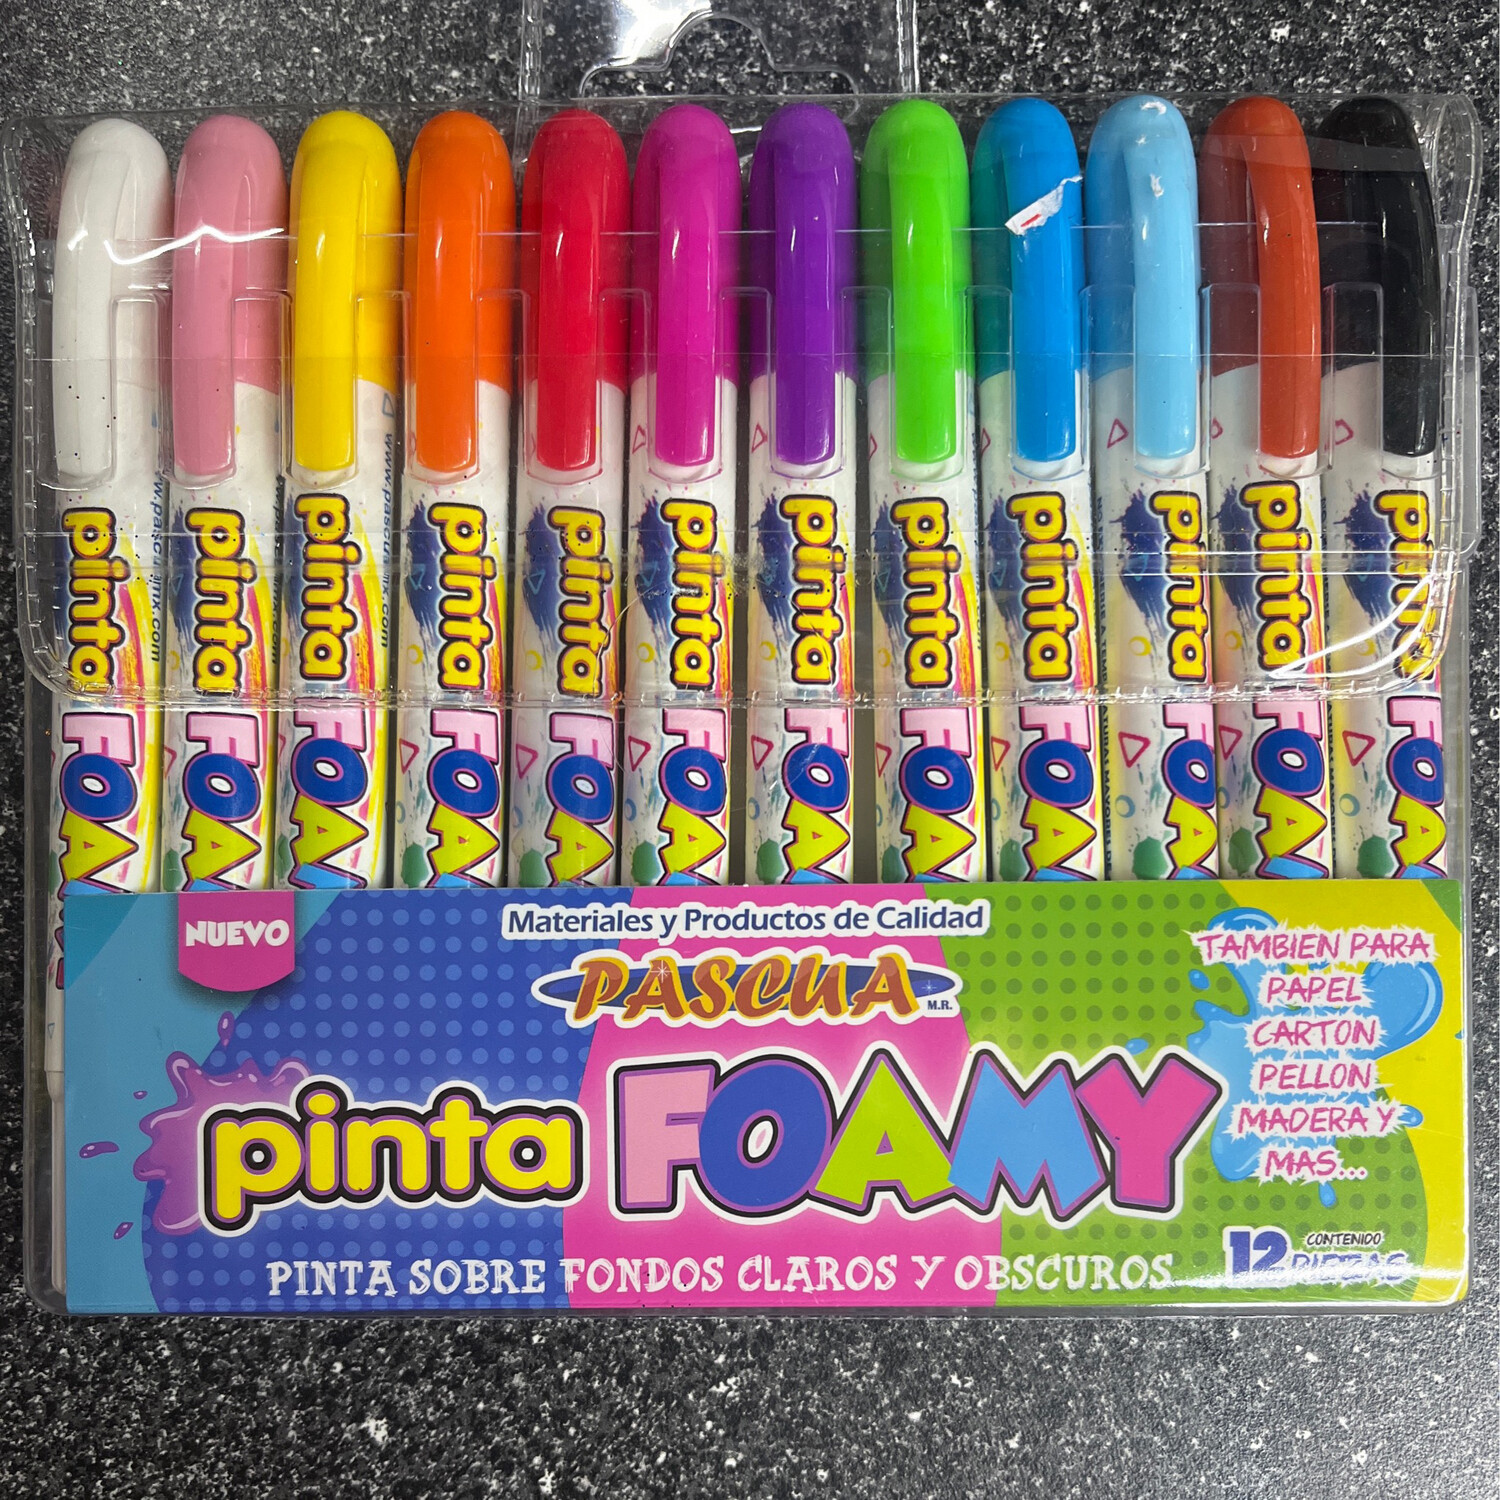 Pinta Foamy (Crayons) 12pcs